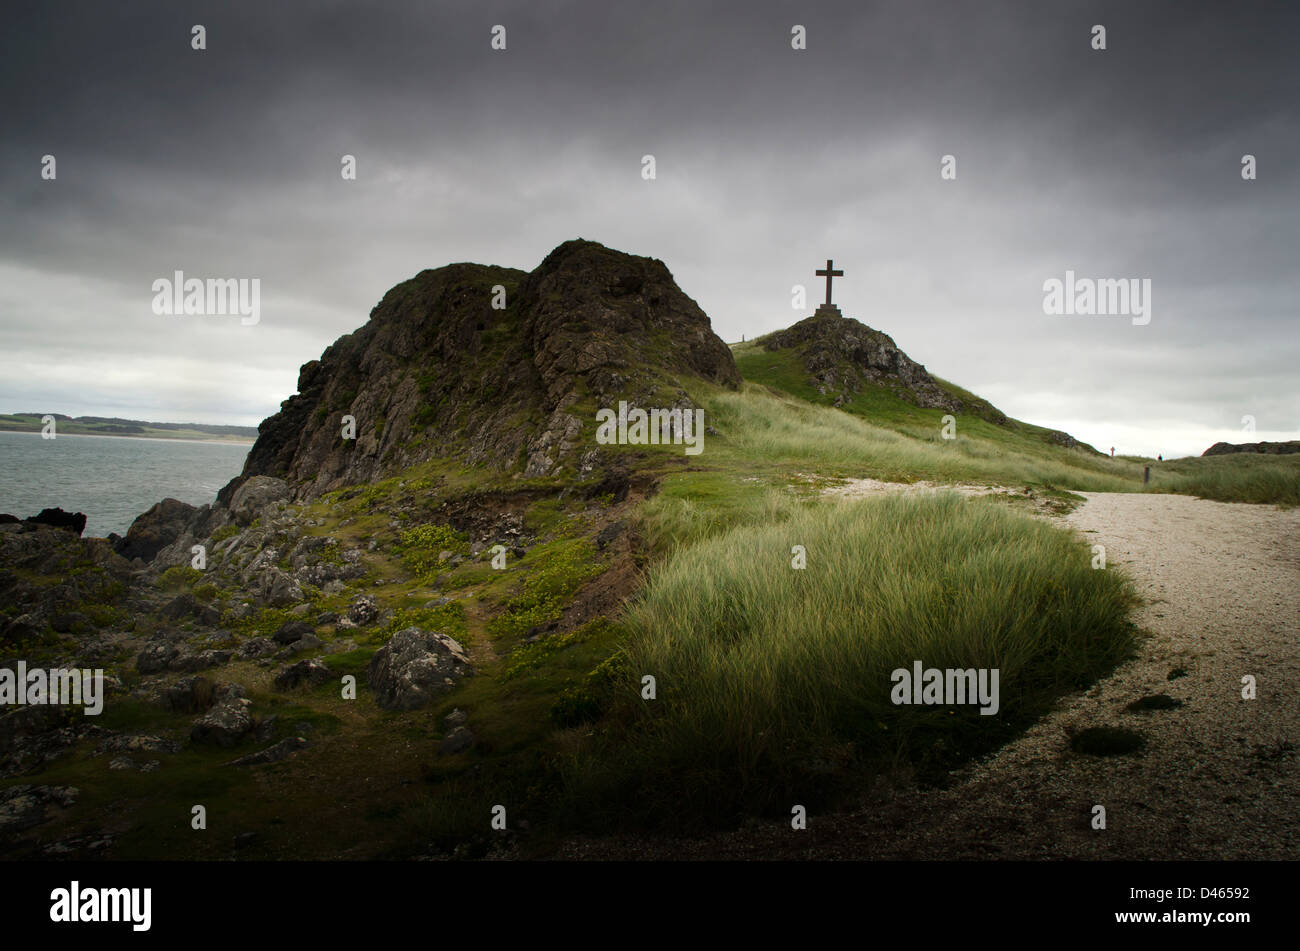 Kreuz auf einem Hügel in der Nähe von Meer, Denkmal, Religeon stürmischen Himmel, Spuk, Anglesey, North Wales, uk, Stockfoto